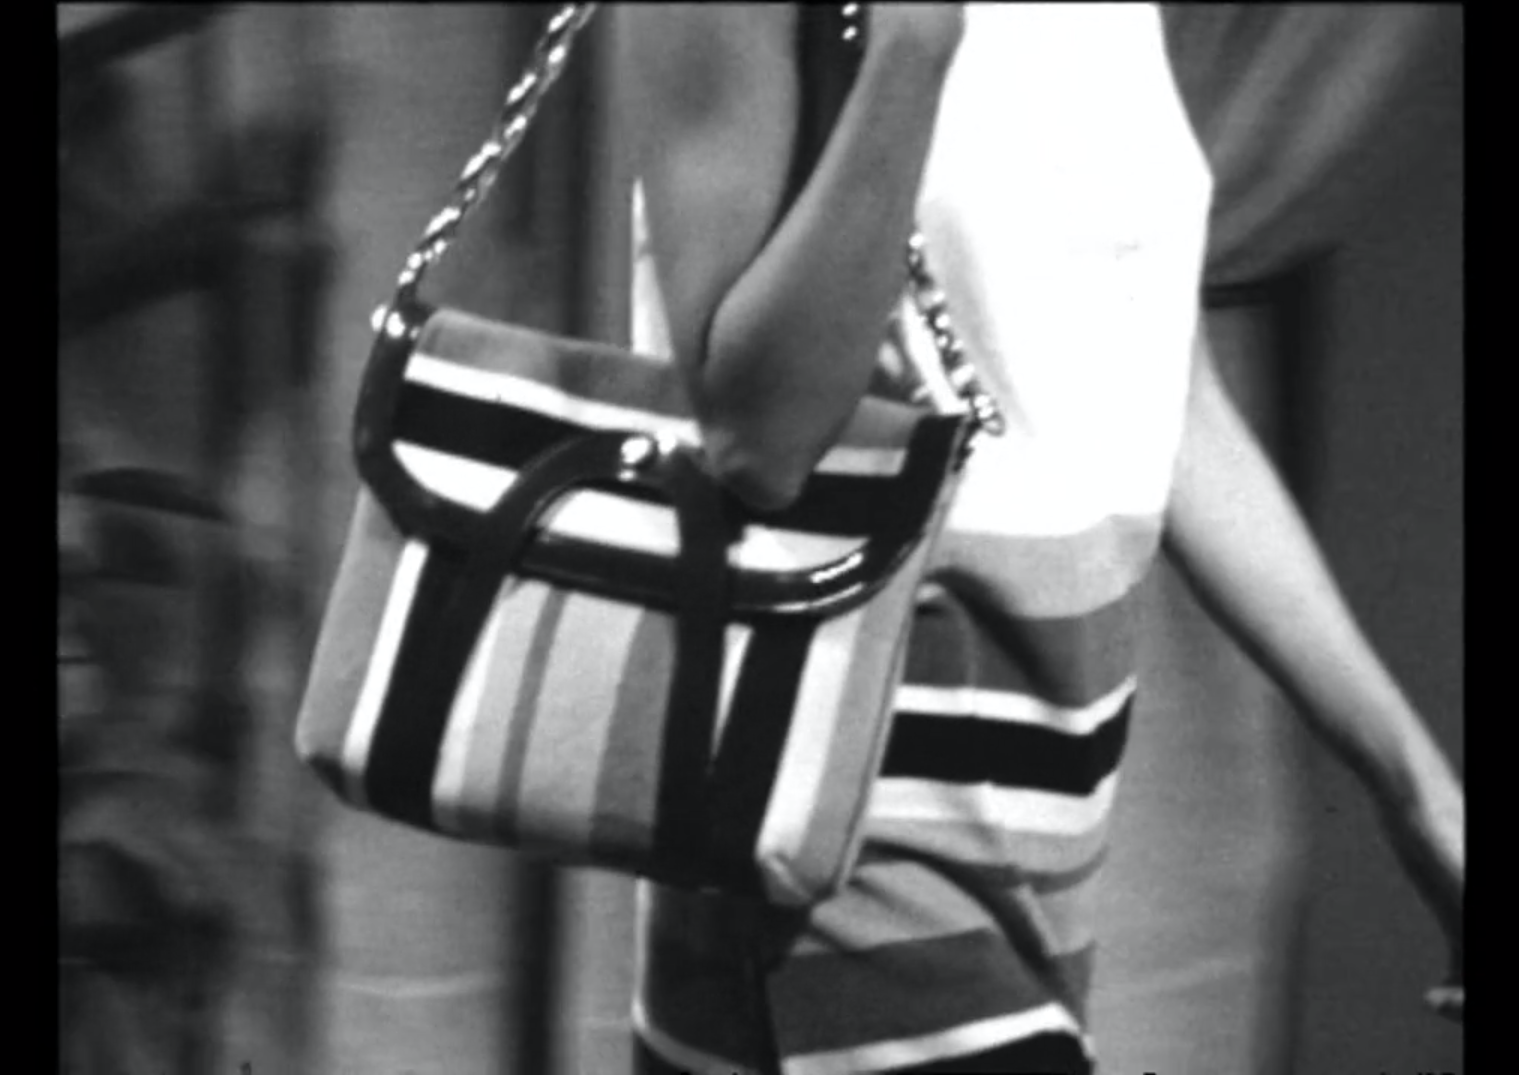 Una borsetta a righe, indossata sul fianco destro di una donna, ripresa da vicino (in b/n)